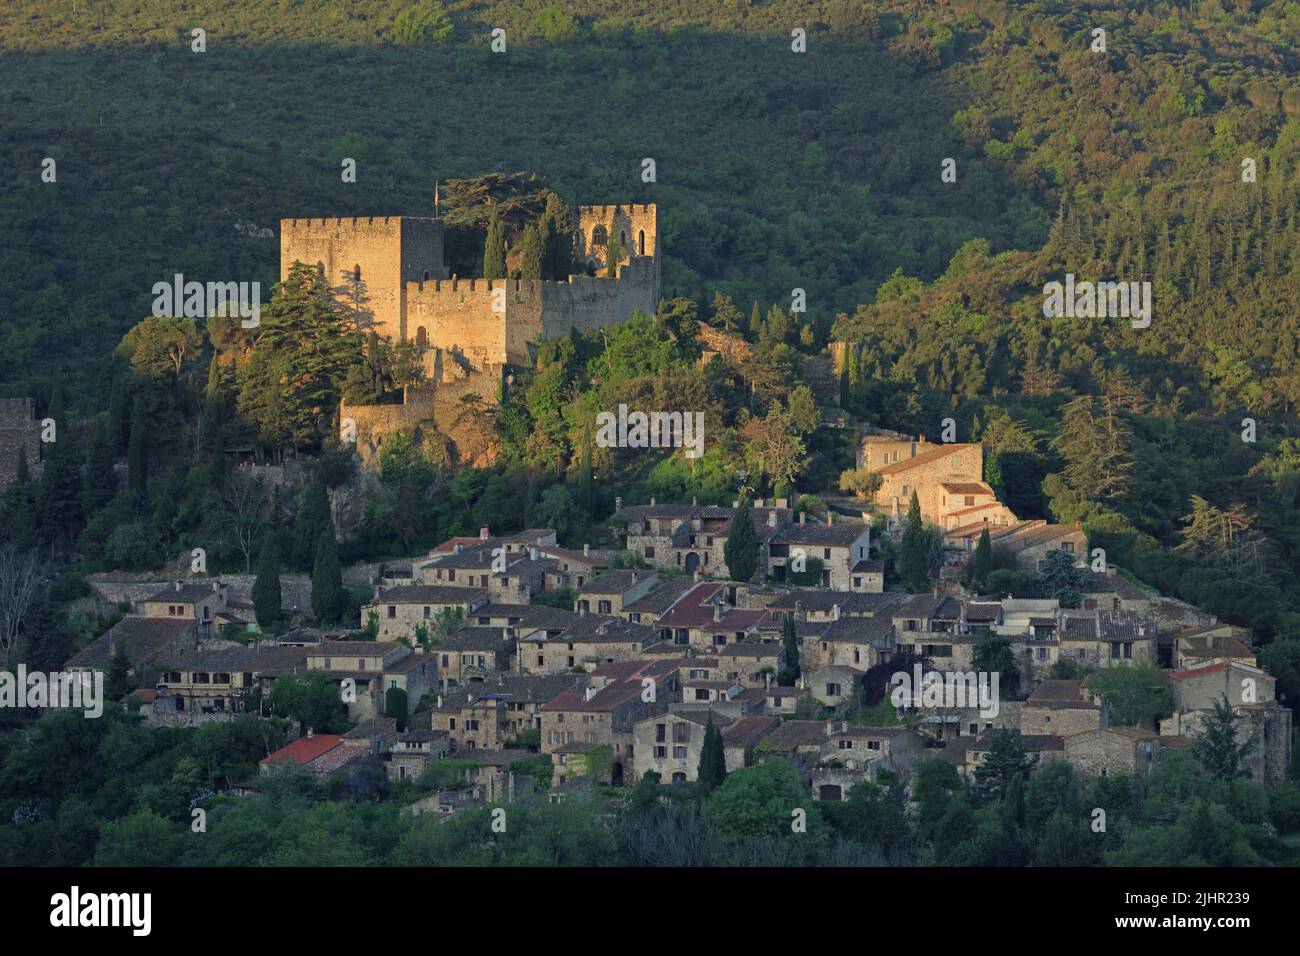 Frankreich, Pyrénées-Orientales (66) Castelnou, classé parmi les plus beaux Villages de France, le jour se lève / Frankreich, Pyrénées-Orientales Castelnou, als eines der schönsten Dörfer Frankreichs eingestuft, steigt der Tag Stockfoto